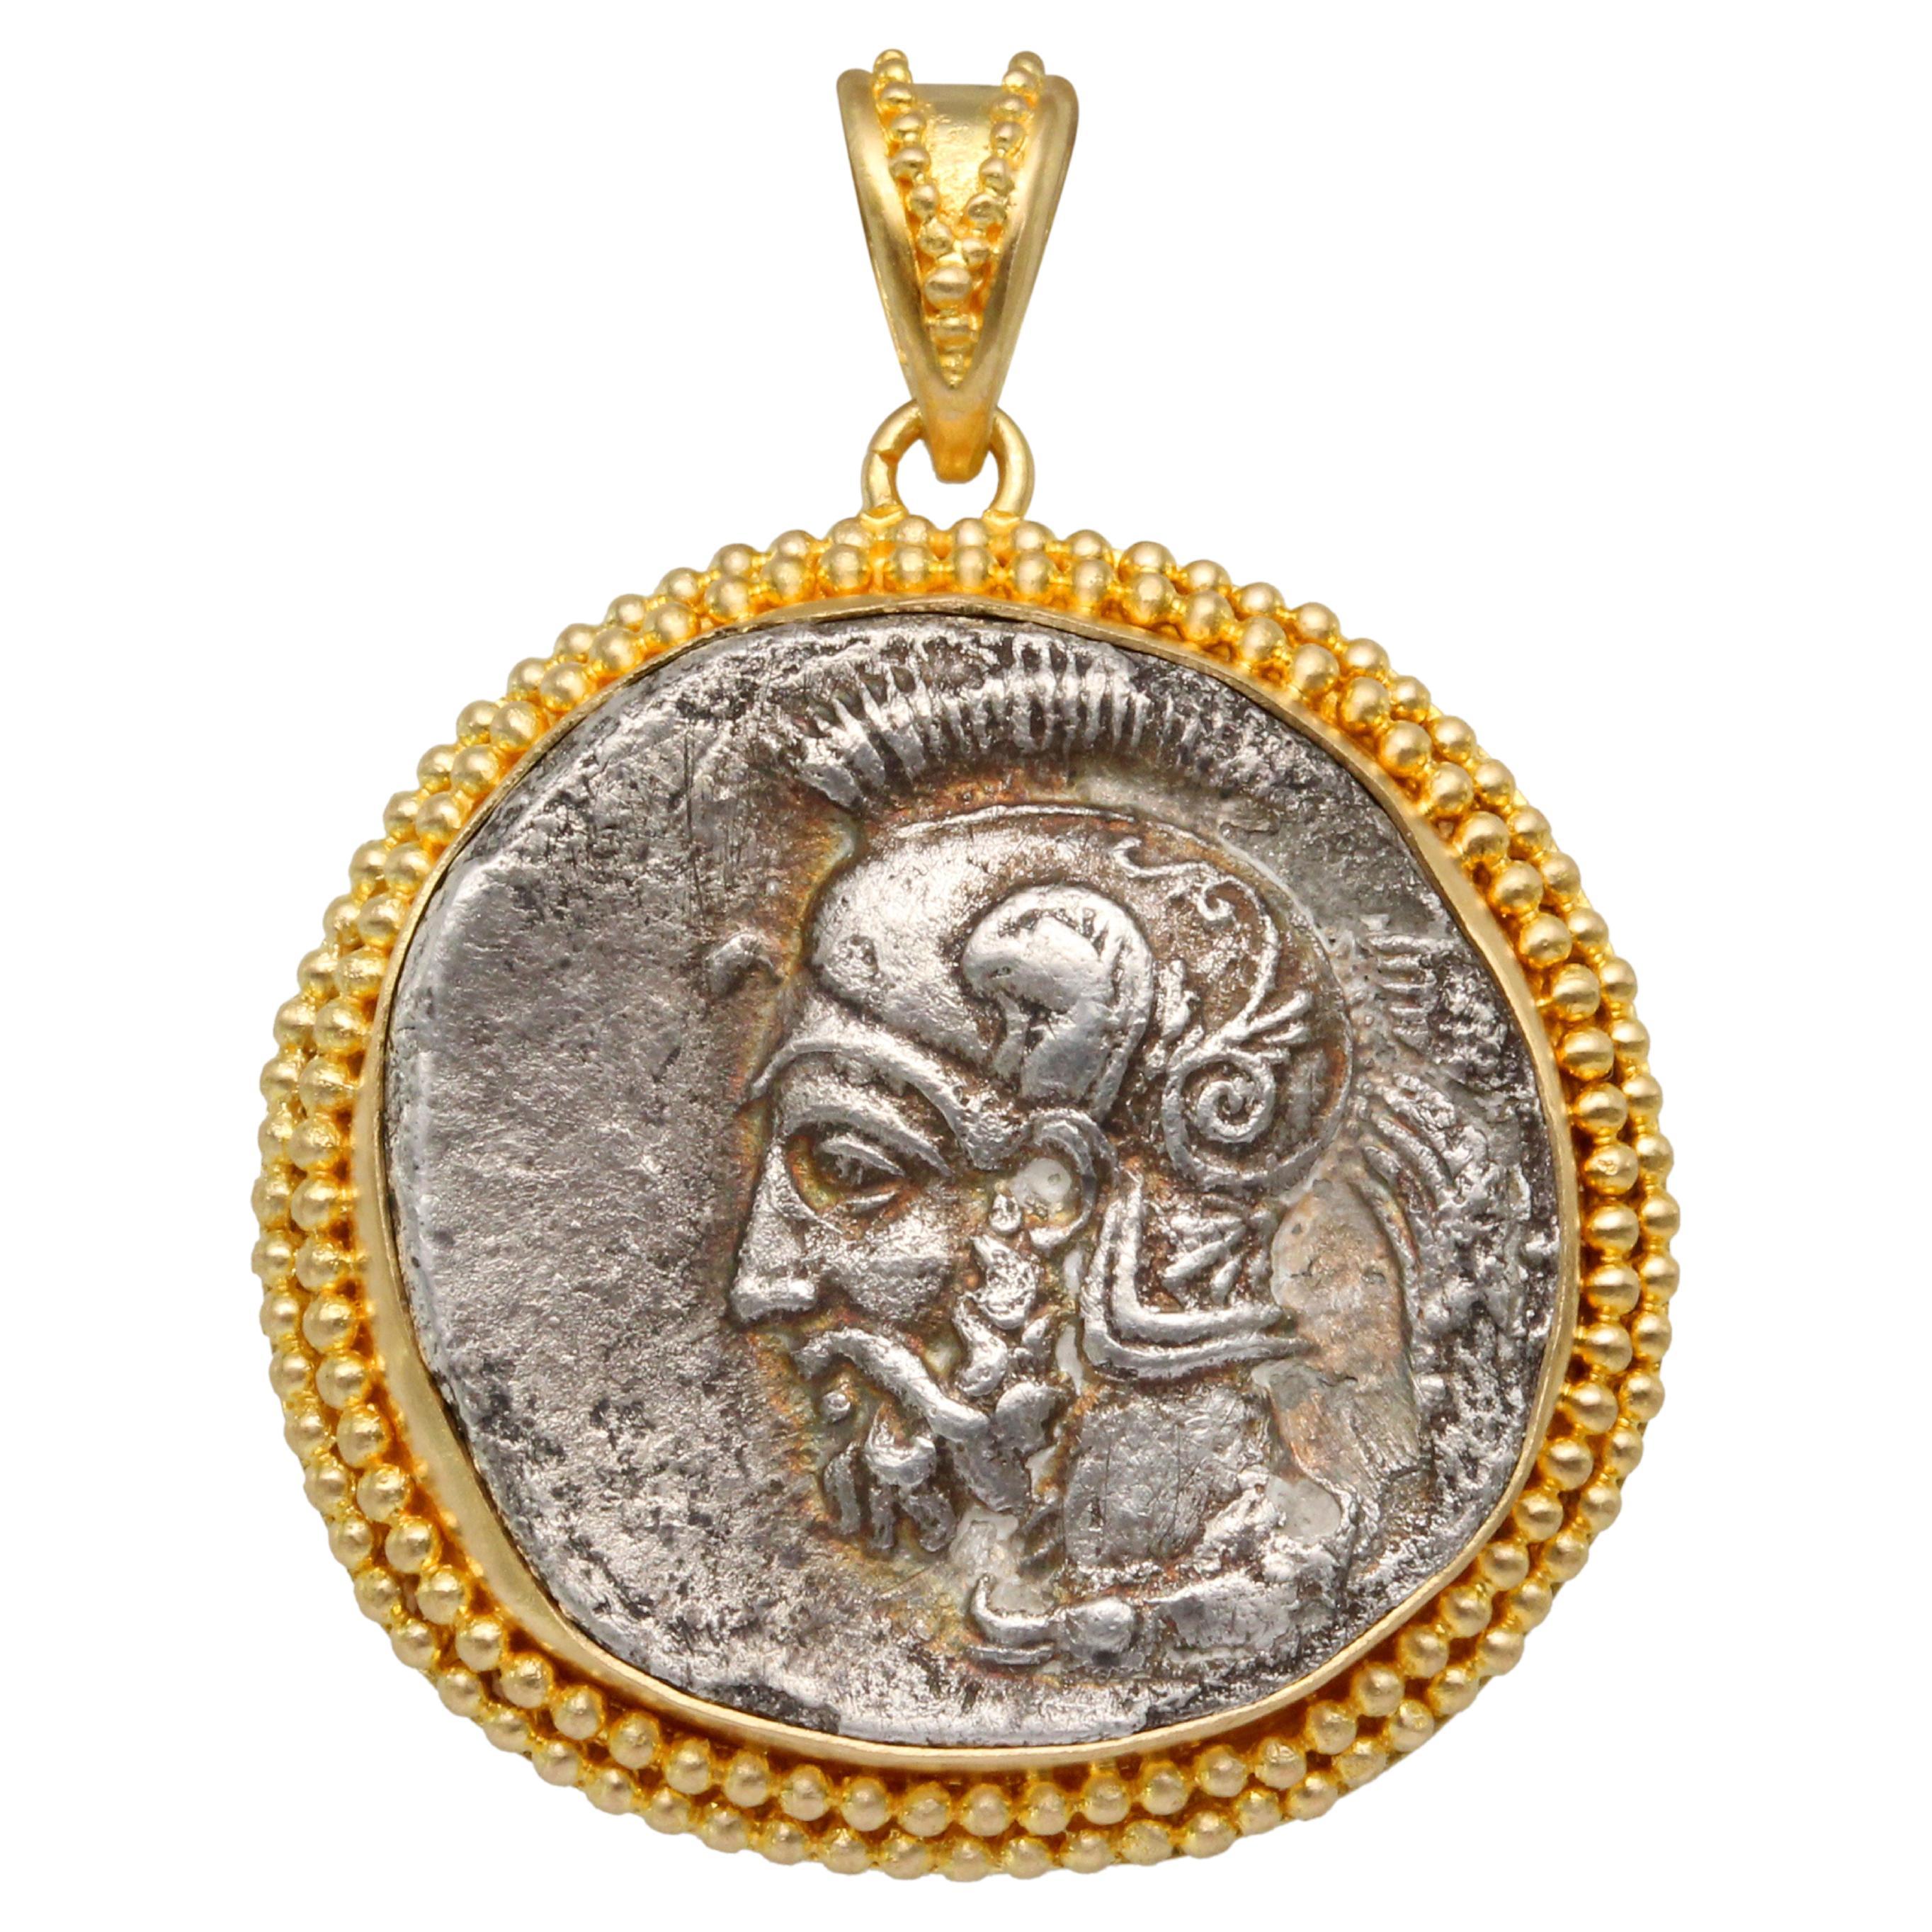 Pendentif grec antique du 4e siècle avant J.-C. avec pièce de monnaie casque en or 18 carats